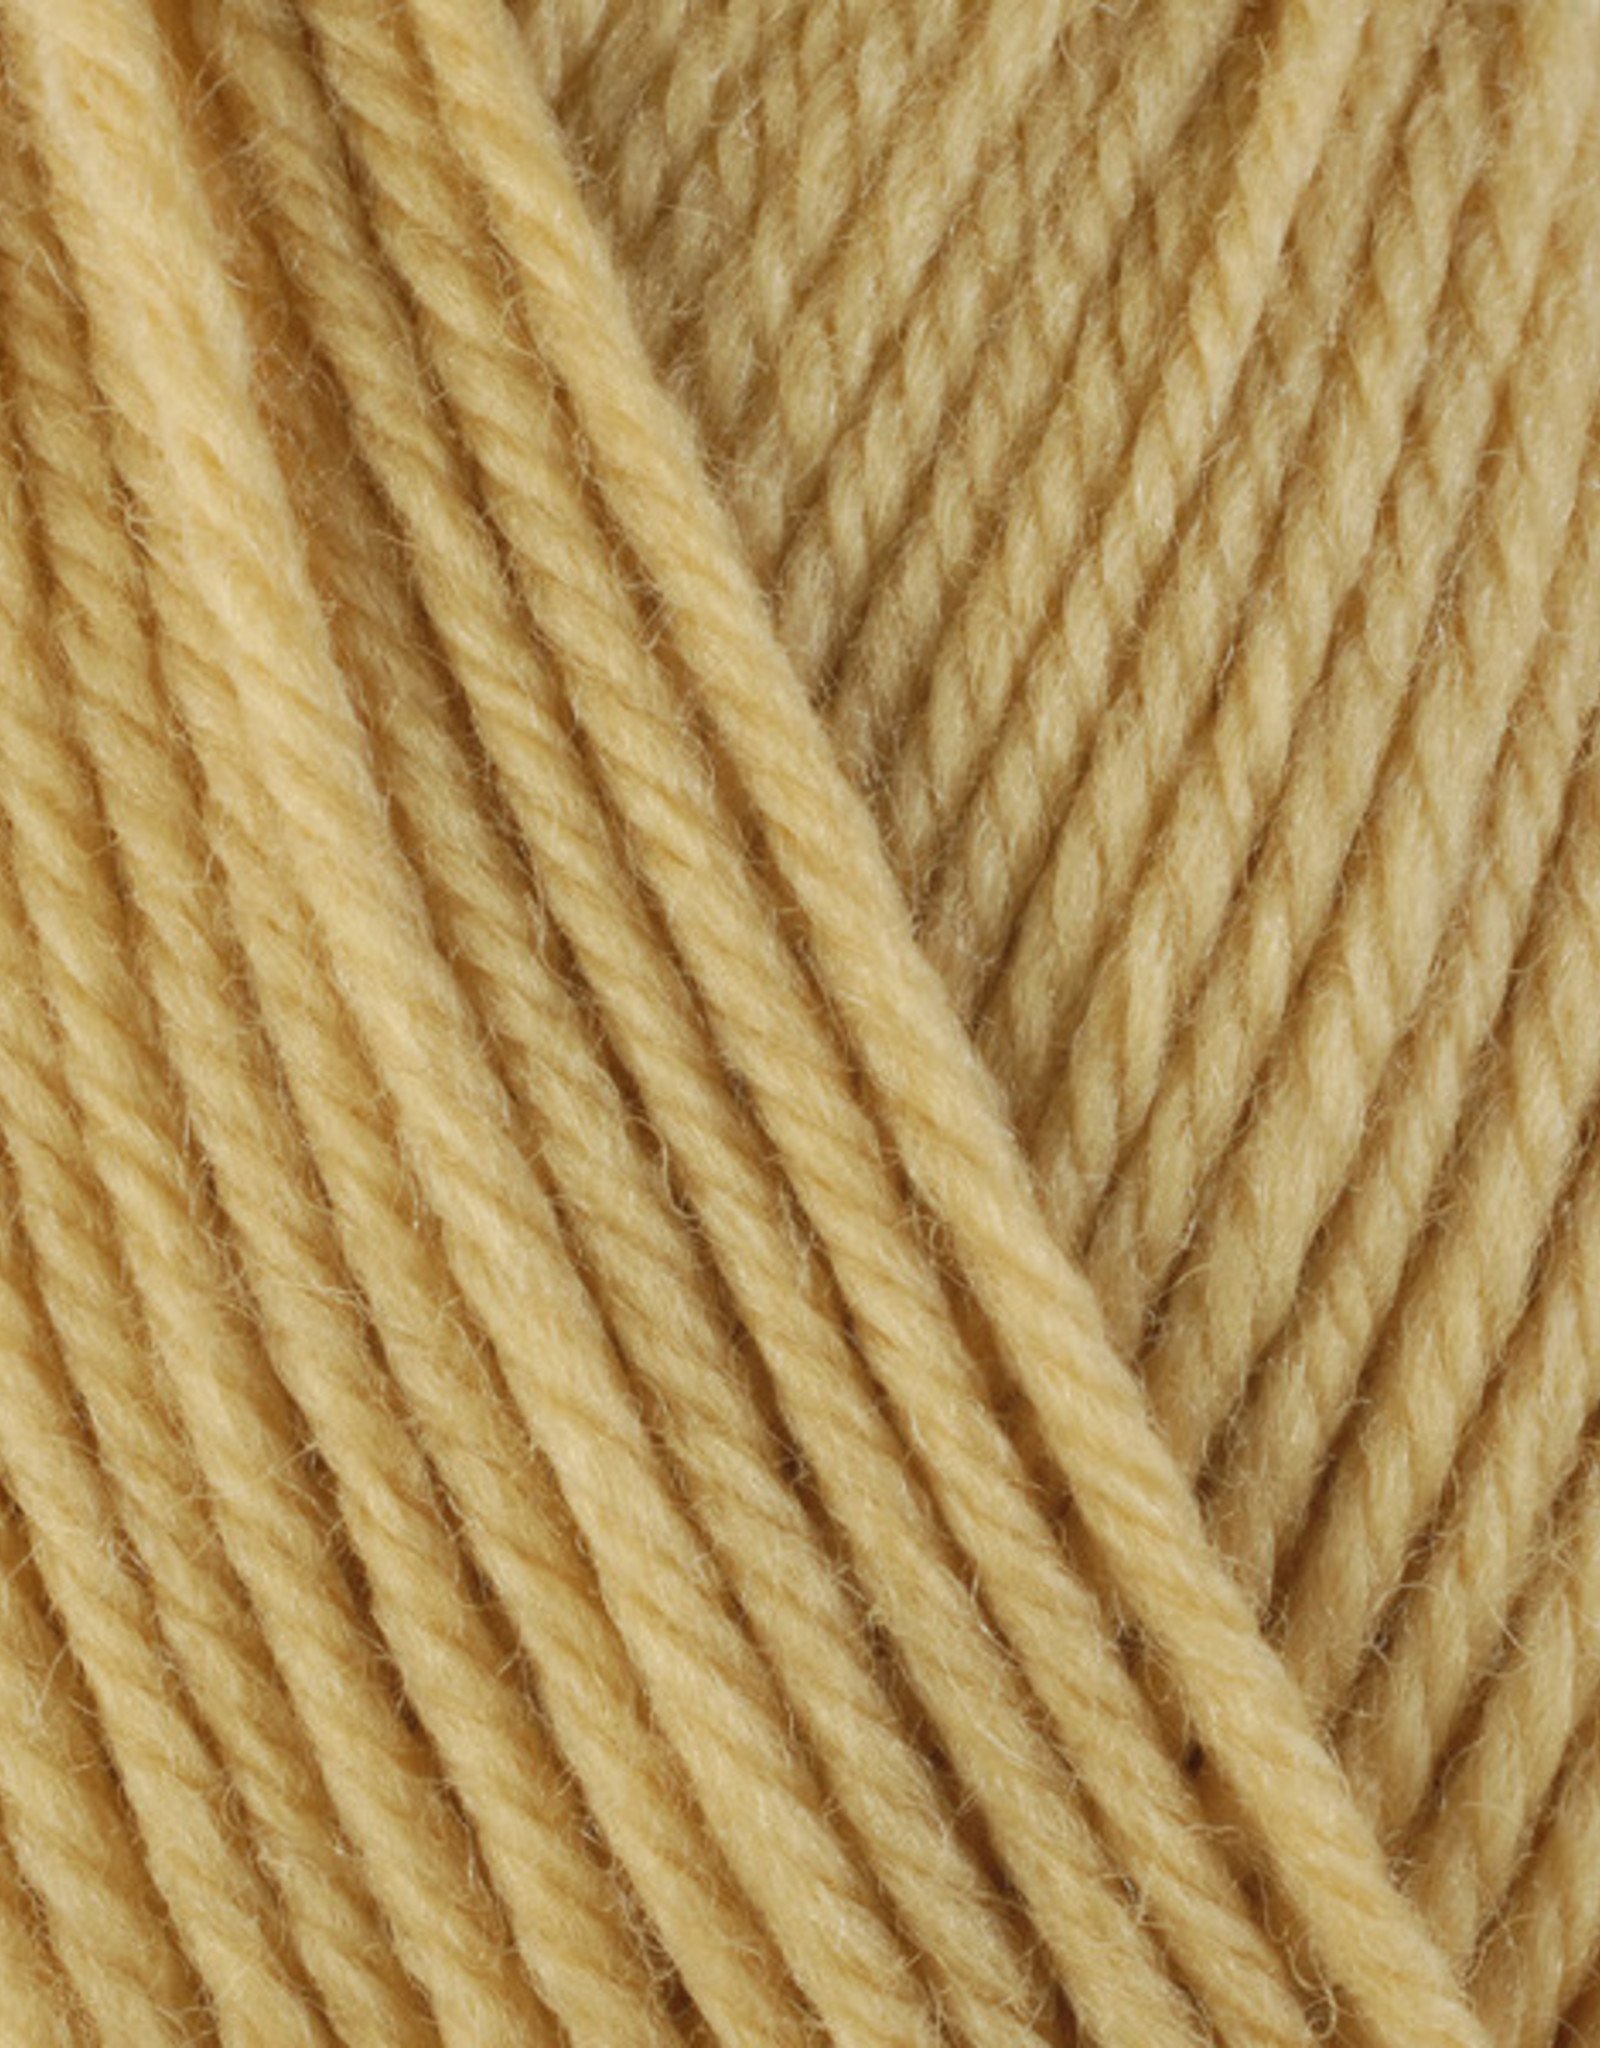 Berroco Ultra Wool 3